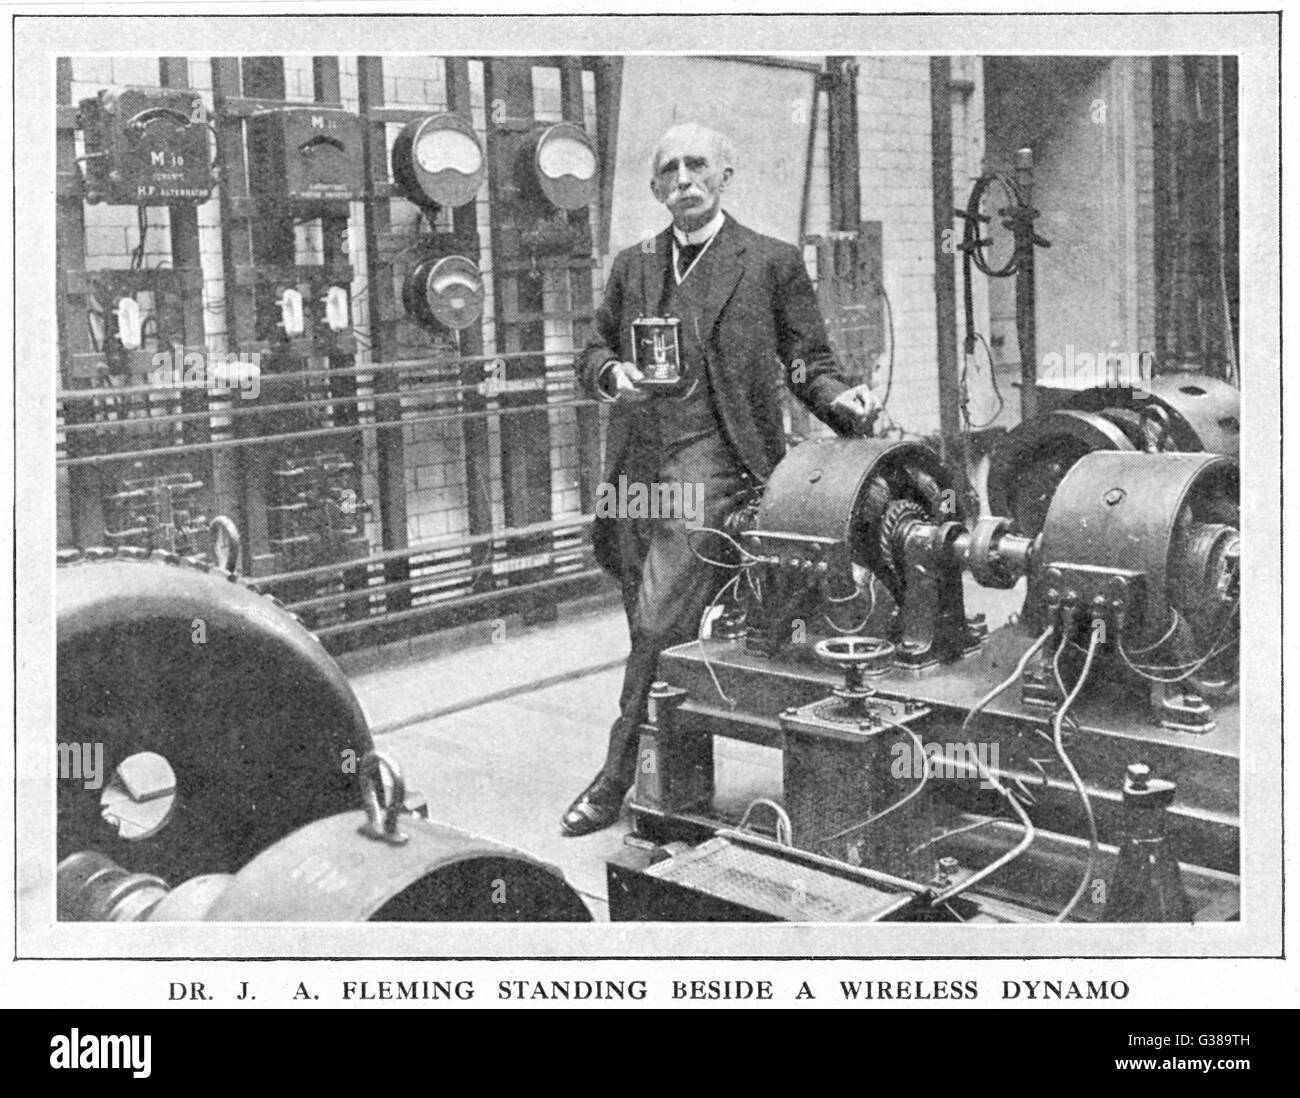 JOHN AMBROSE FLEMING englischer Elektrotechniker;  trugen zur Entwicklung der Telefonie, elektrische Beleuchtung und drahtlose Telegraphie.     Datum: 1849-1945 Stockfoto